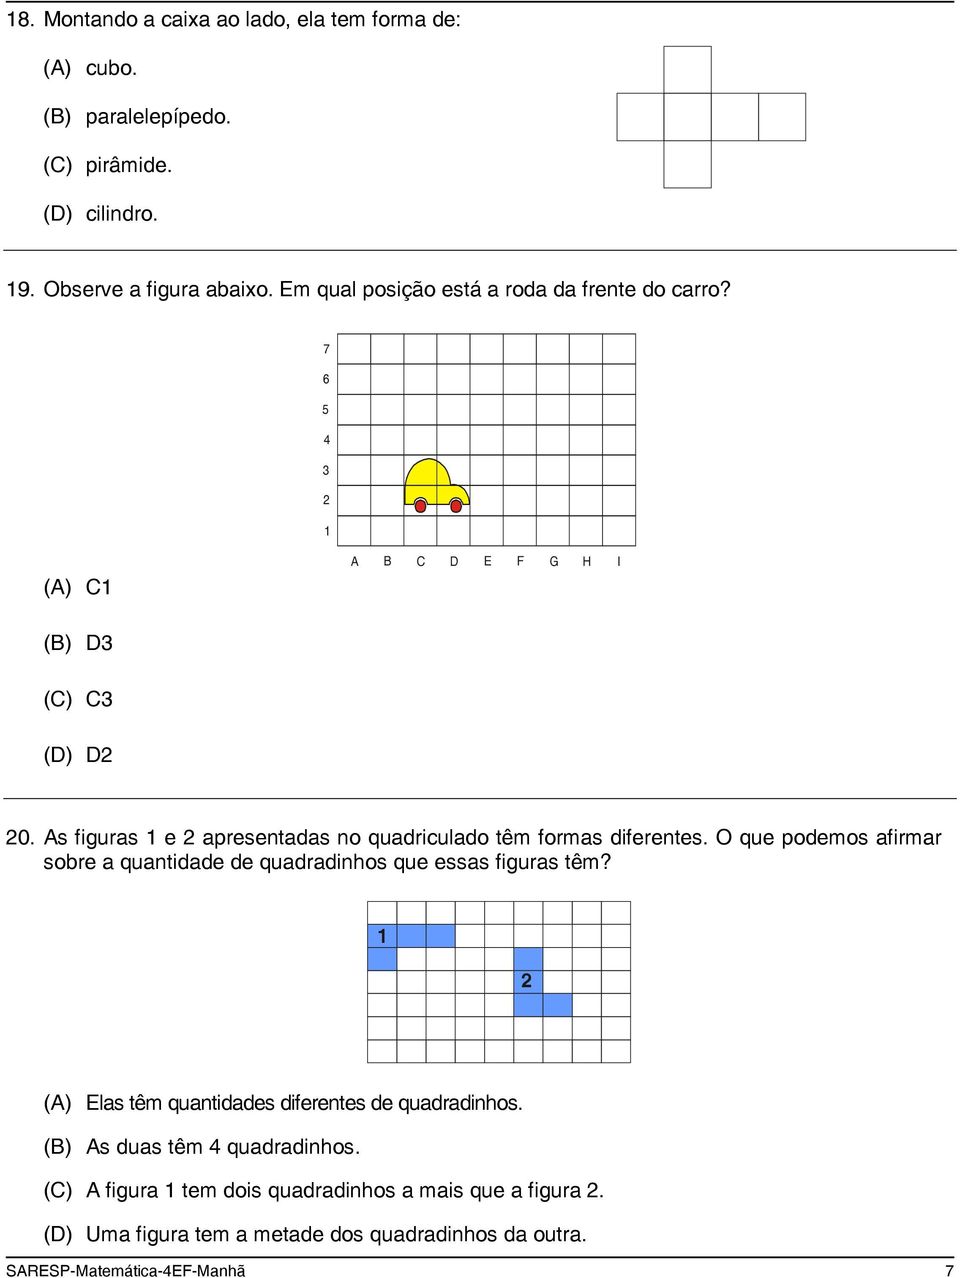 As figuras 1 e 2 apresentadas no quadriculado têm formas diferentes. O que podemos afirmar sobre a quantidade de quadradinhos que essas figuras têm?